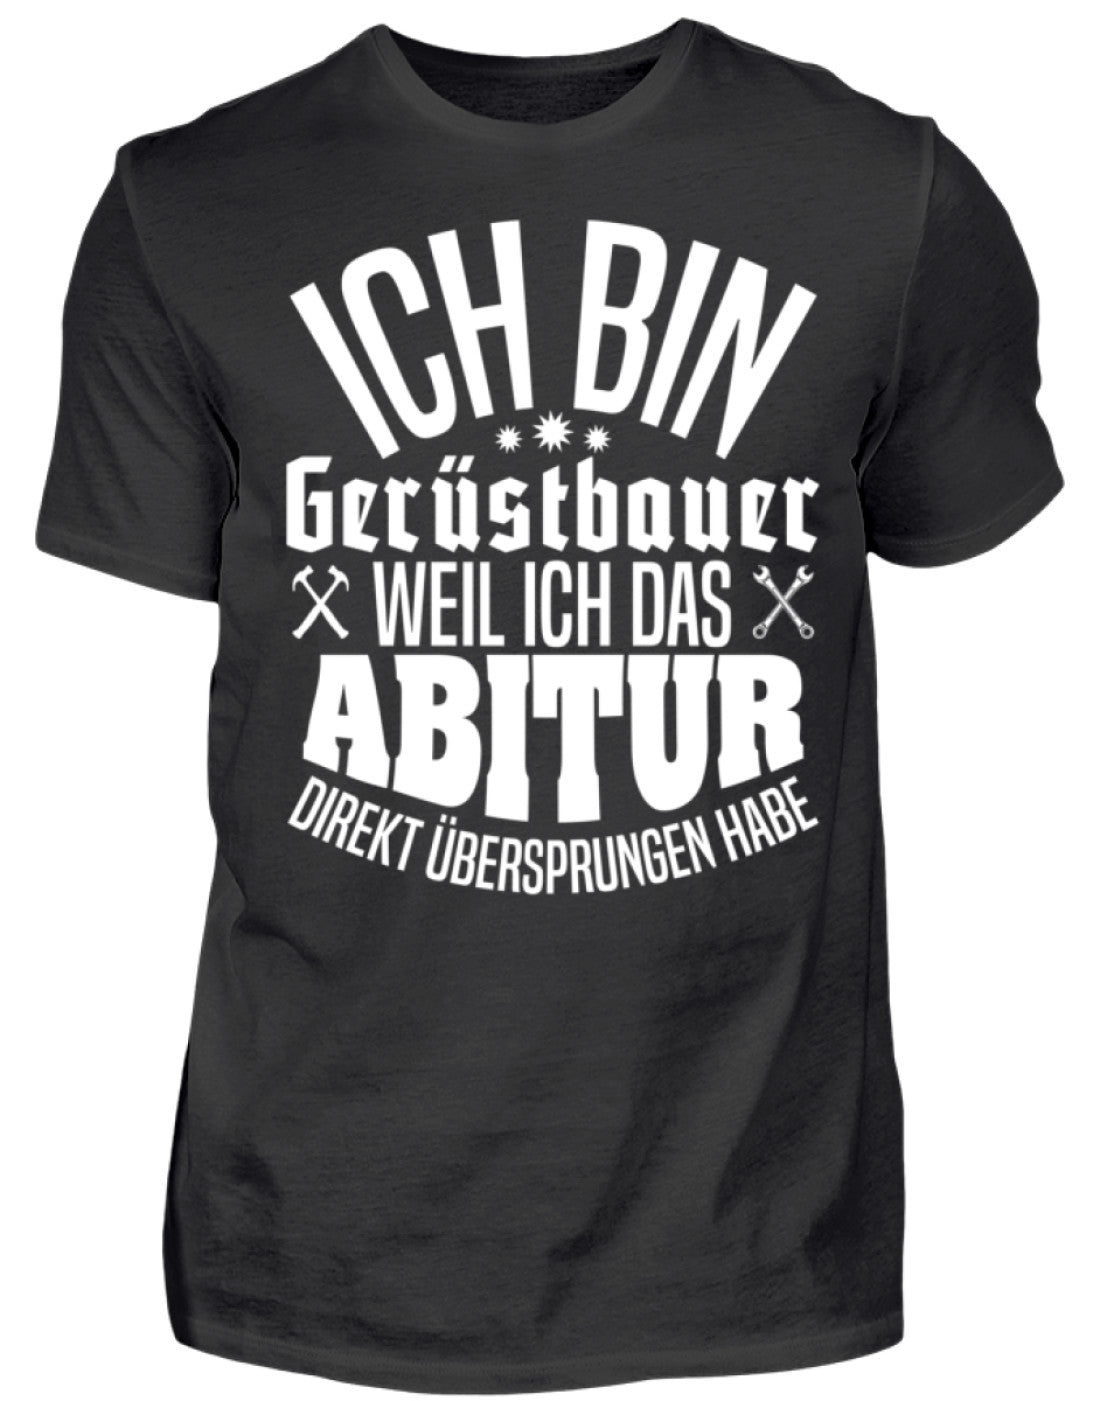 Gerüstbauer Shirt / Abitur €21.95 Gerüstbauer - Shop >>